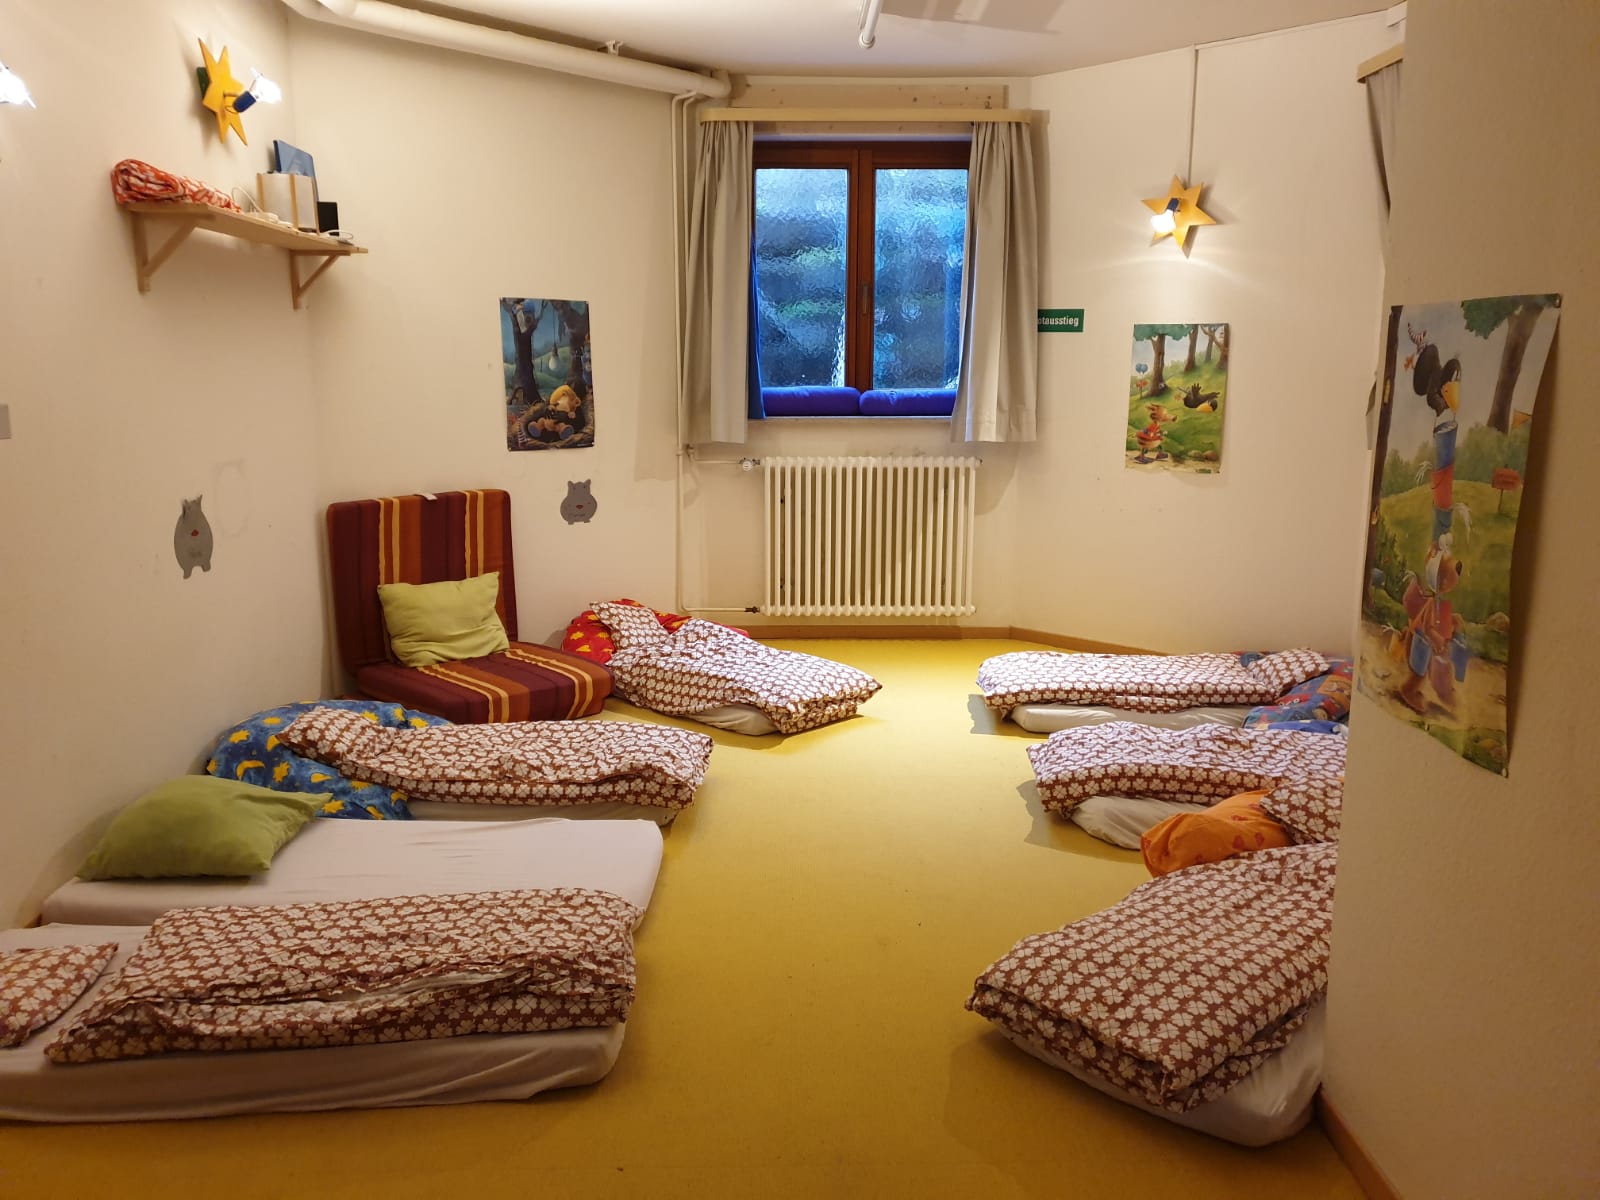 Hier ist der Schlafraum zu sehen. Es liegen Matratzen auf dem Boden, mit weißen Spannbetttüchern und rot weißer Bettwäsche.